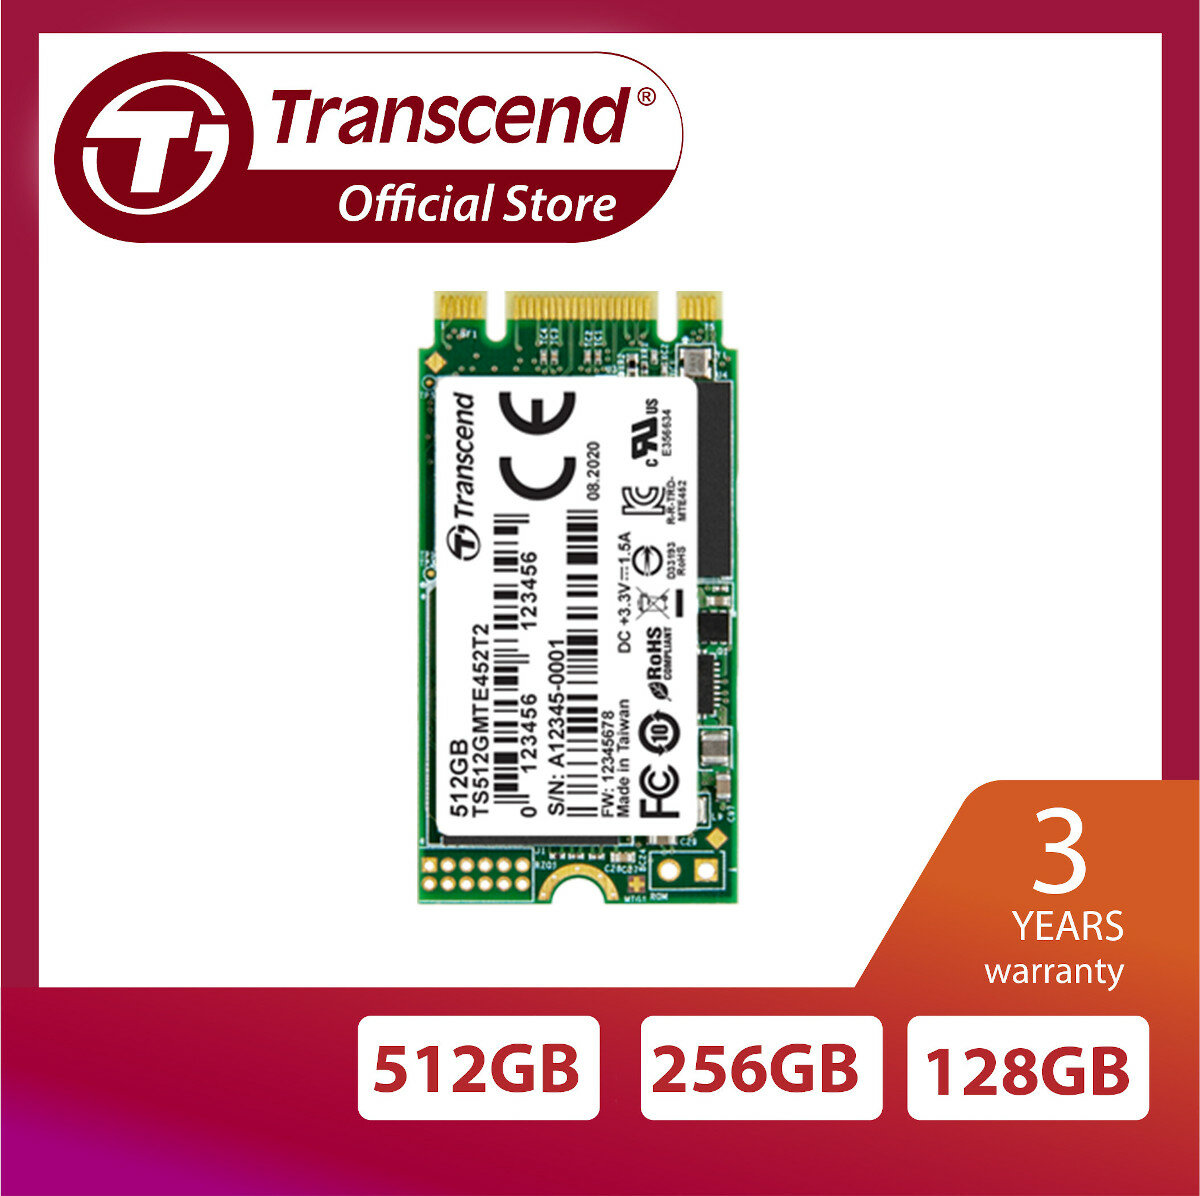 Dysk SSD TRANSCEND 128GB zdjęcie dysku z długością gwarancji producenta